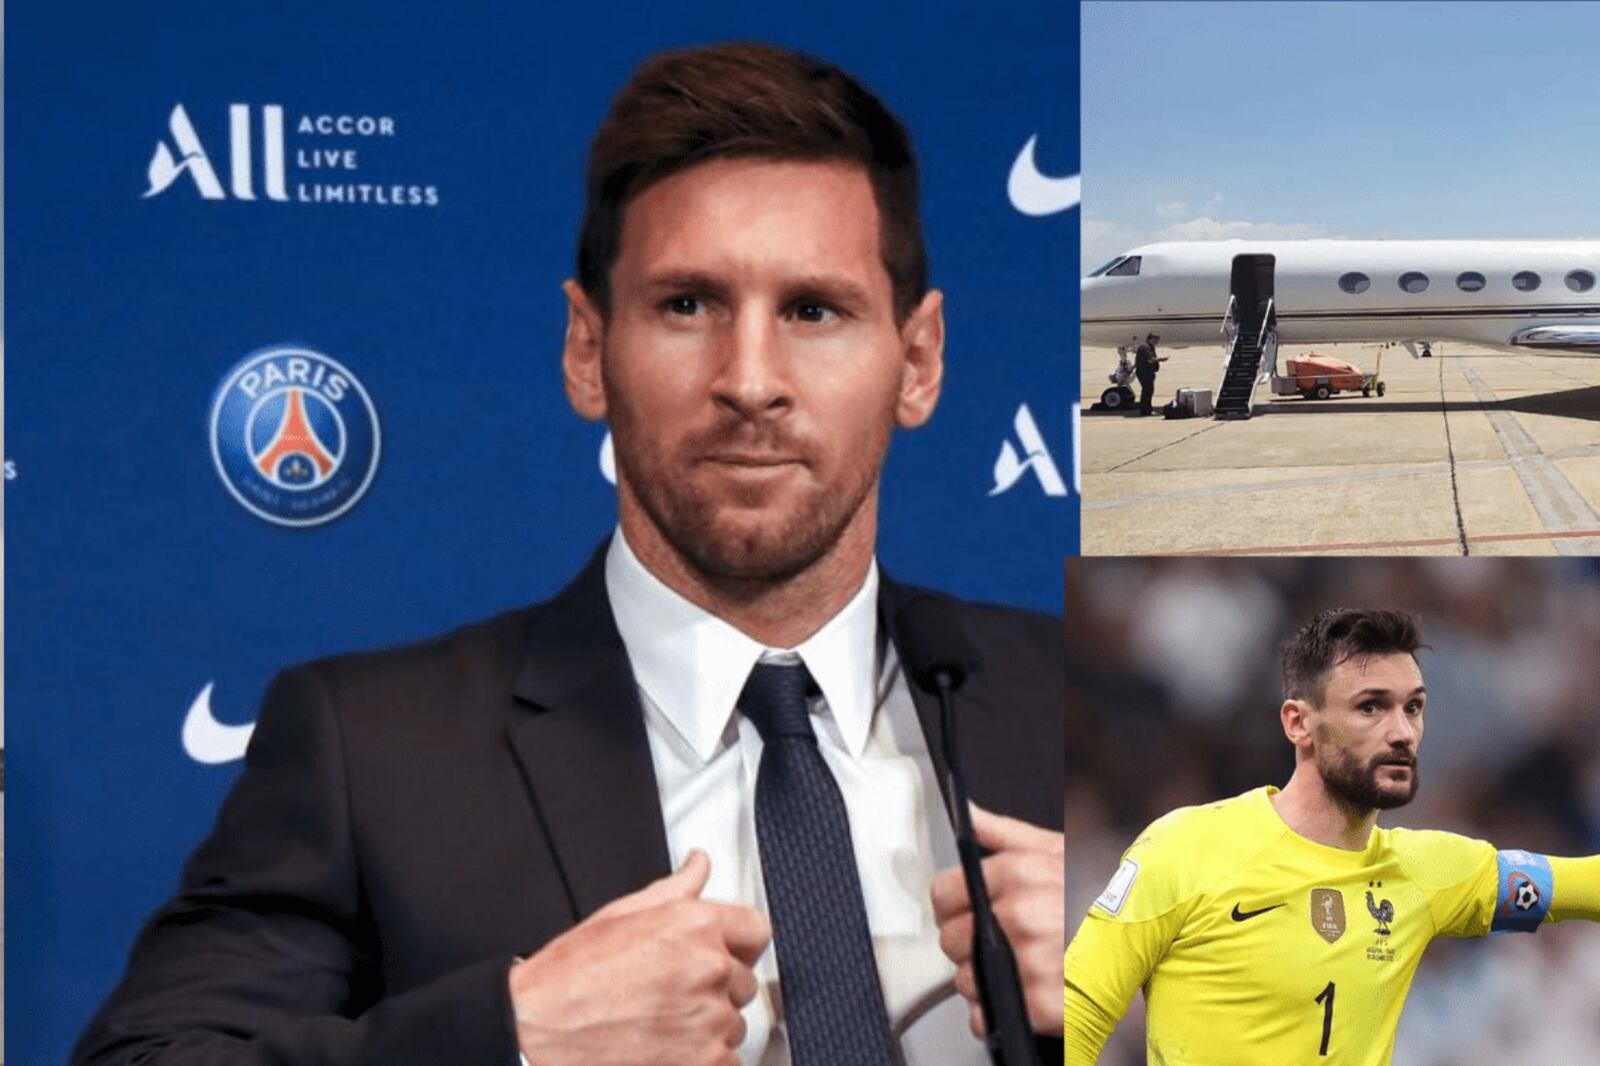 El boleto mas costoso, cuanto tiene que jugar Lloris para viajar en el jet privadode Messi